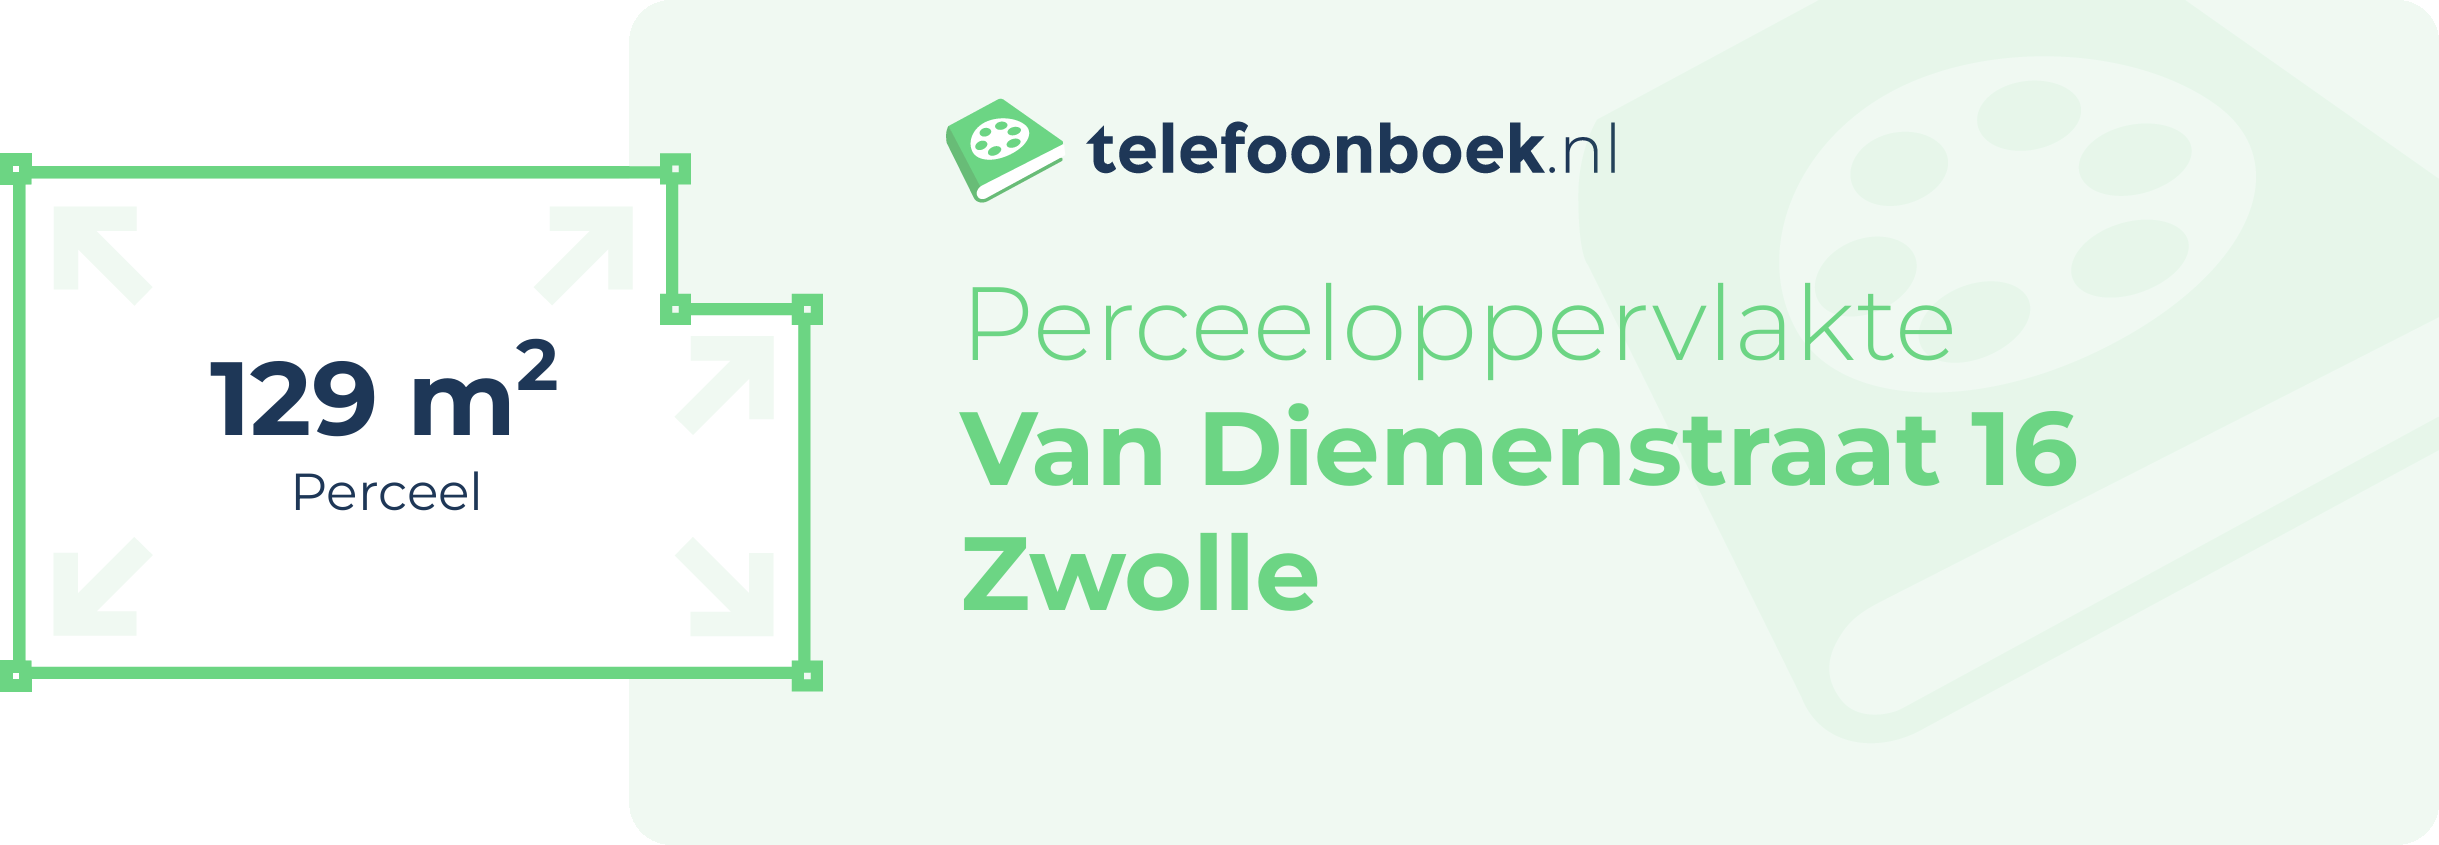 Perceeloppervlakte Van Diemenstraat 16 Zwolle